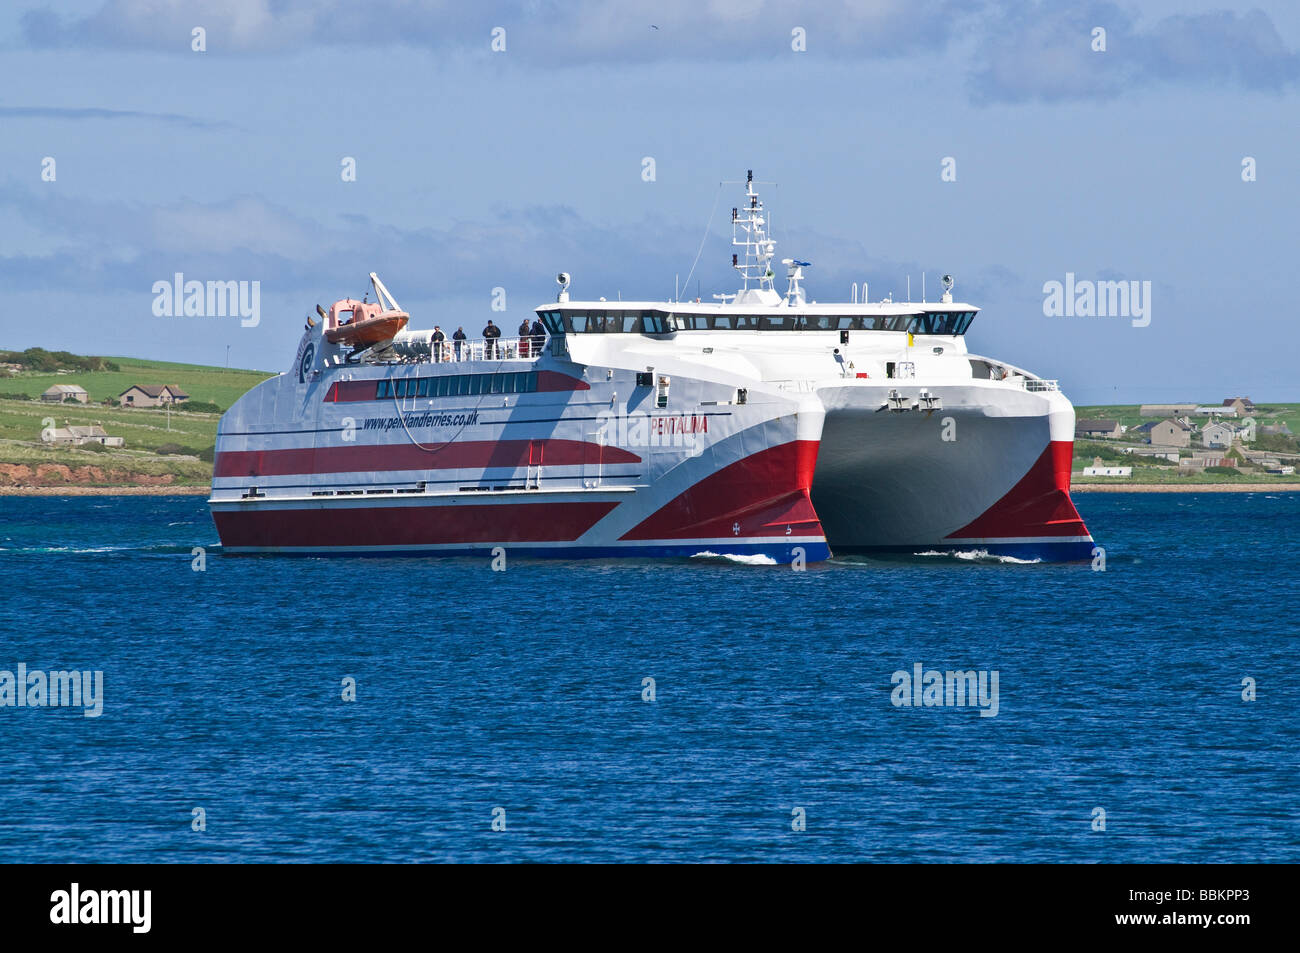 dh Pentland traghetti SPEDIZIONE ORKNEY Catamaran MV Pentalina arrivo St Margarets speranza scozia traghetto veloce regno unito Foto Stock